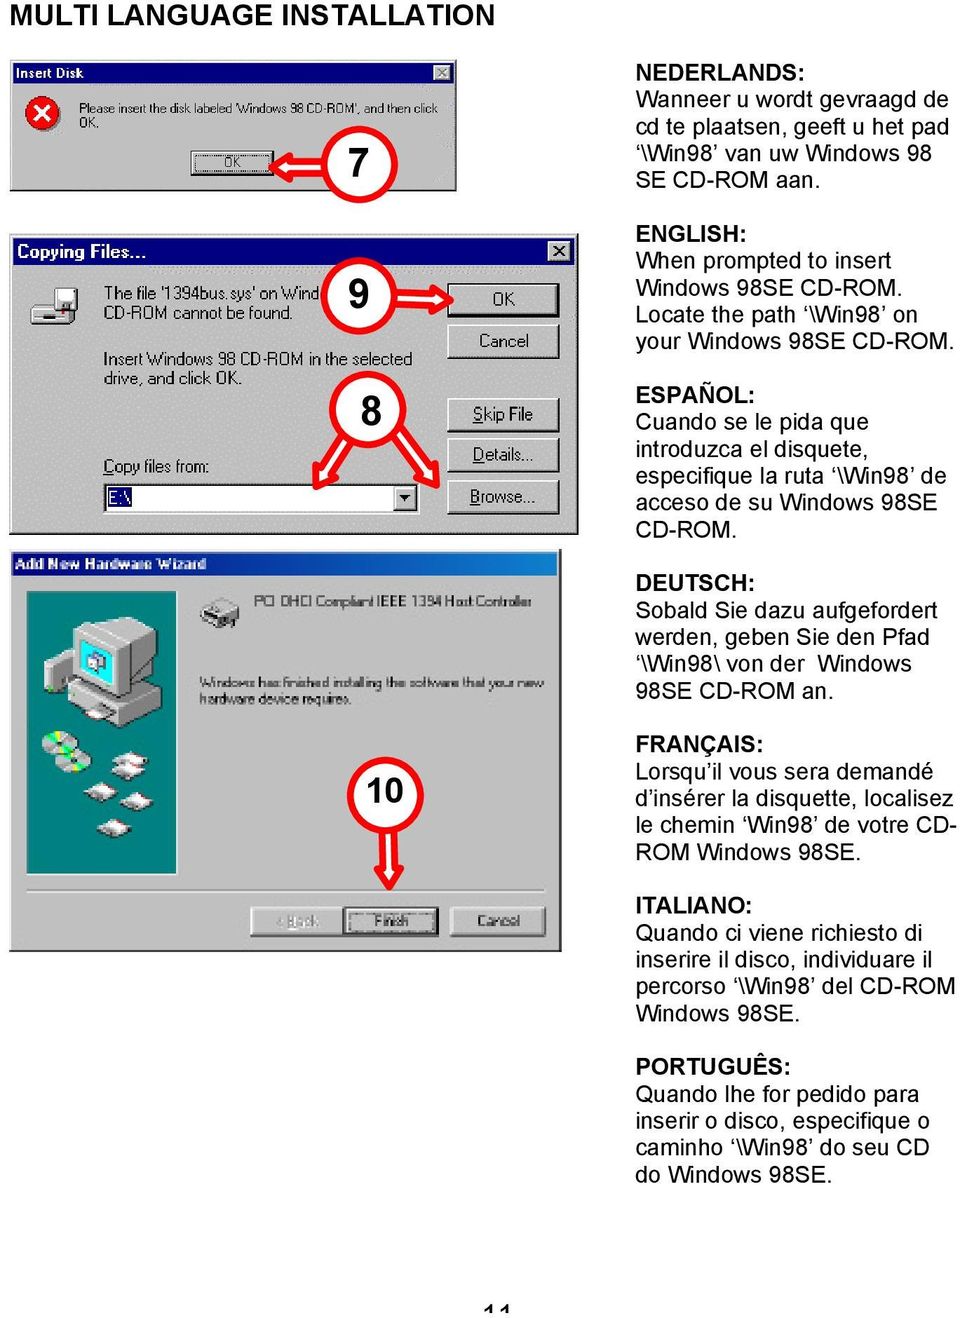 DEUTSCH: Sobald Sie dazu aufgefordert werden, geben Sie den Pfad \Win98\ von der Windows 98SE CD-ROM an.